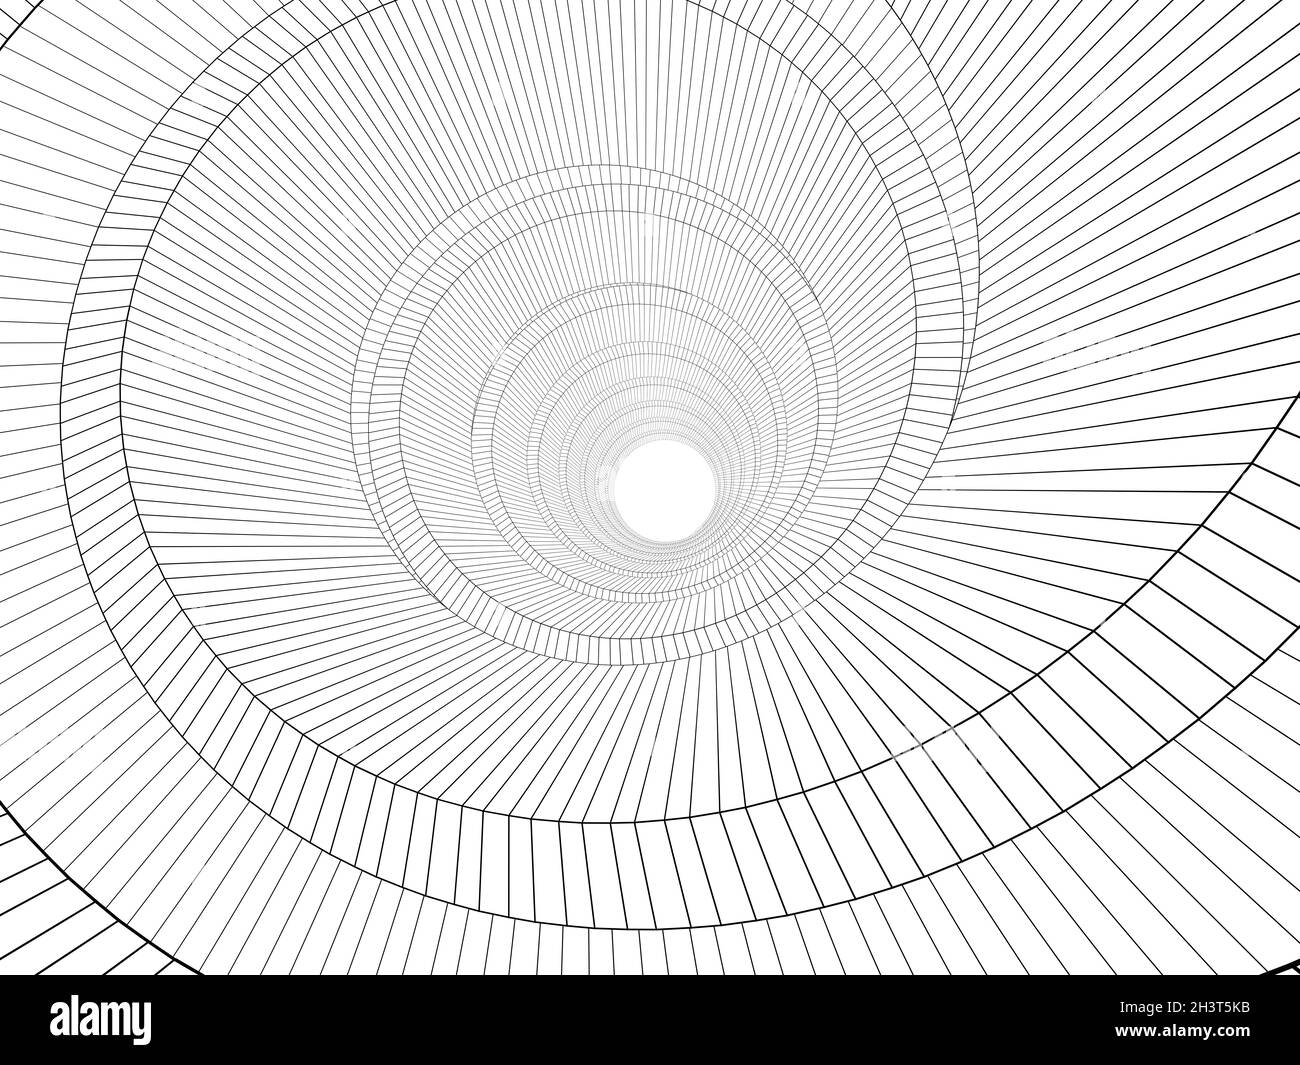 Modello interno a spirale con struttura a filo, vista prospettica grandangolare isolata su sfondo bianco, illustrazione del rendering 3d Foto Stock